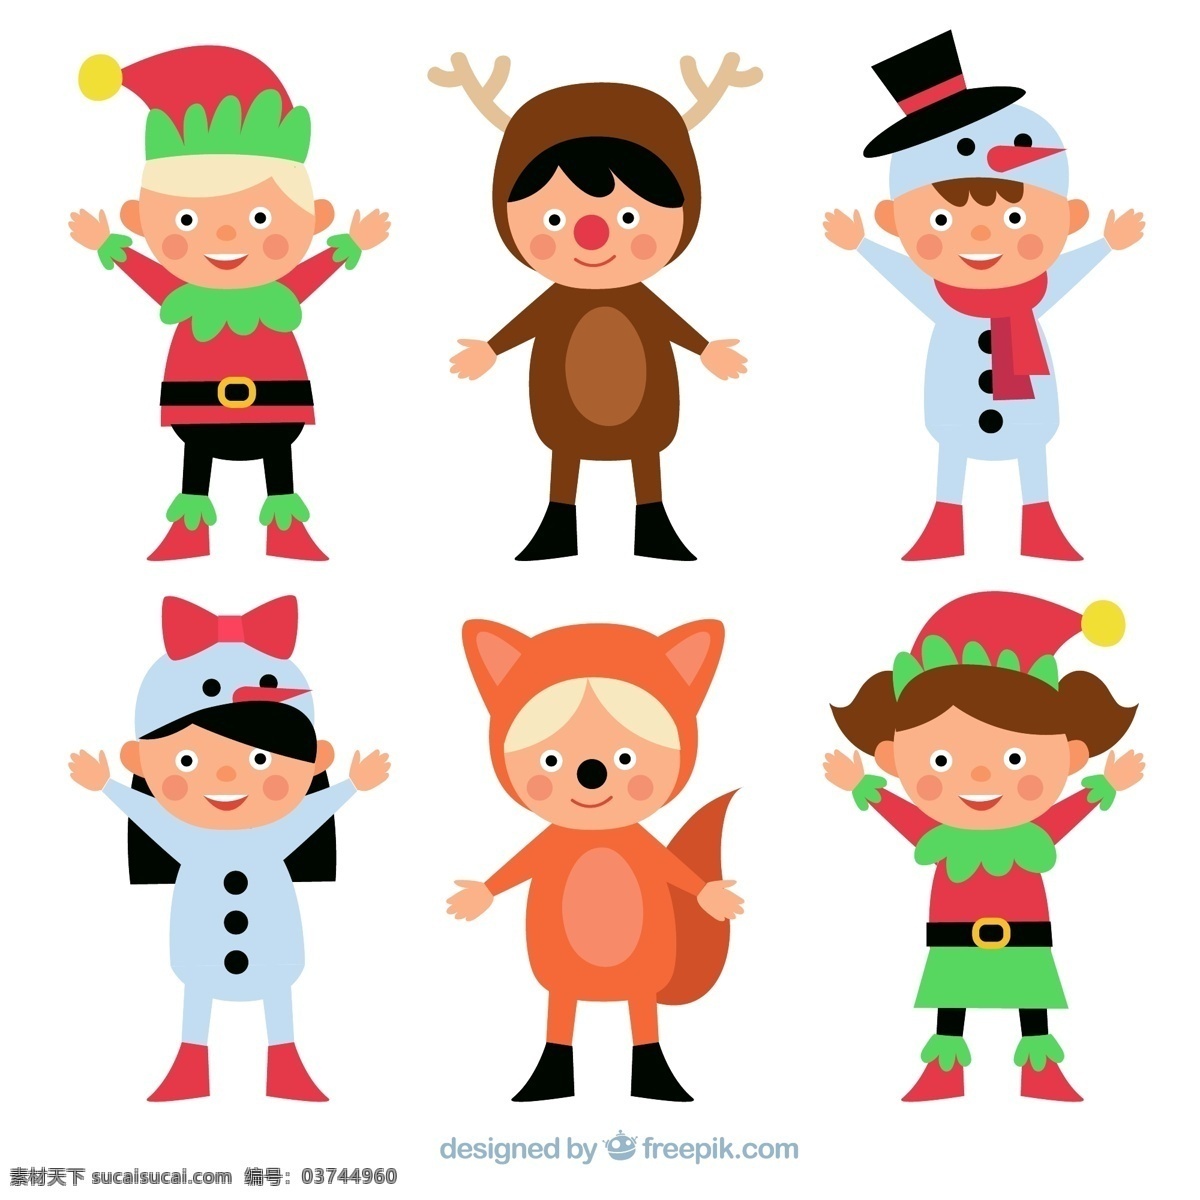 款 圣诞 化妆 舞会 儿童 矢量 圣诞节 狐狸 小朋友 精灵 驯鹿 雪人 装扮 动漫动画 动漫人物